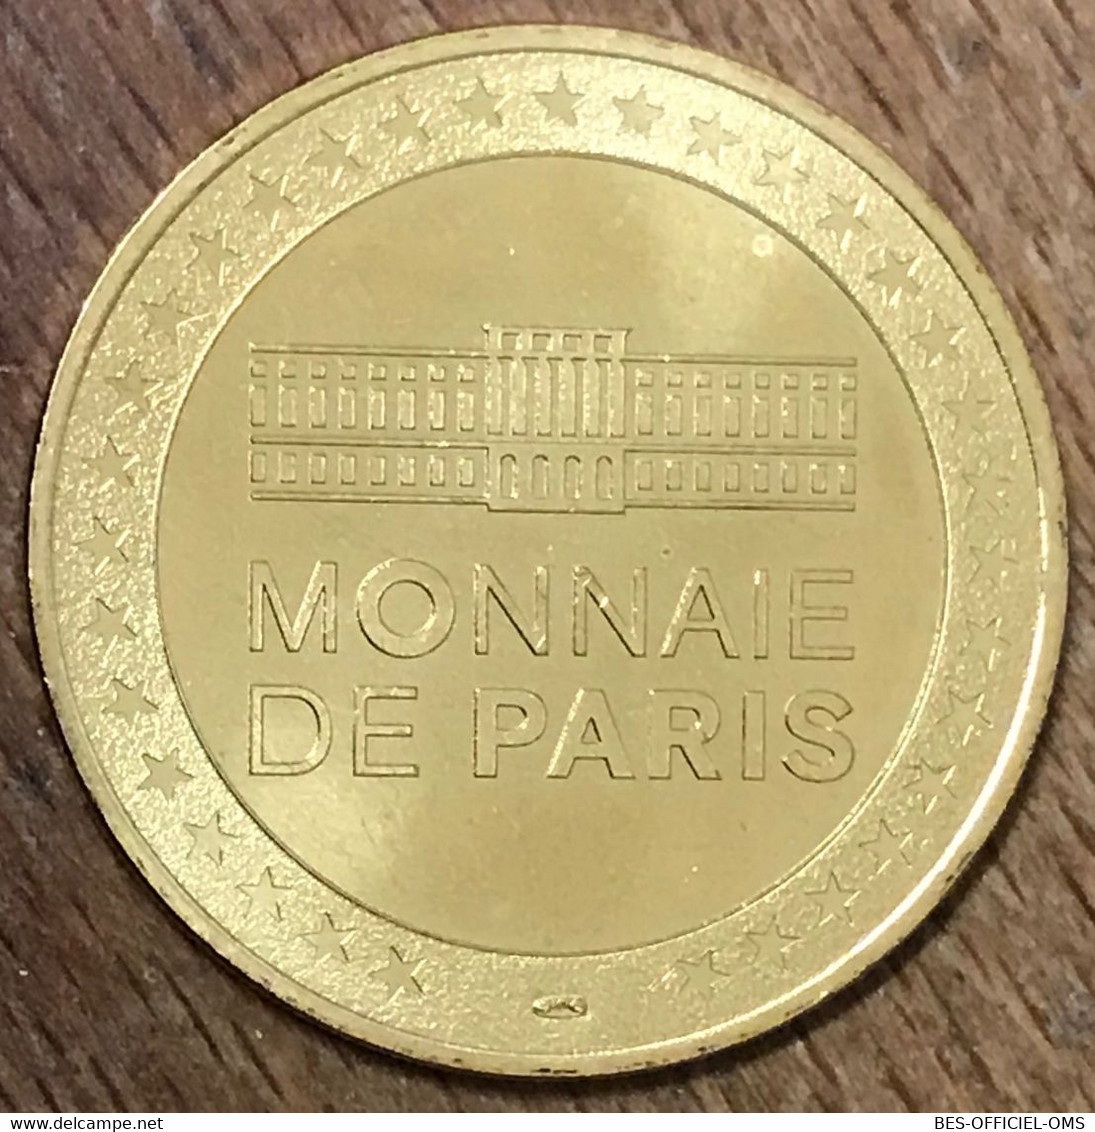 75006 PARIS ASTERIX & OBELIX MDP MÉDAILLE SOUVENIR MONNAIE DE PARIS JETON TOURISTIQUE MEDALS COINS TOKENS - 2017